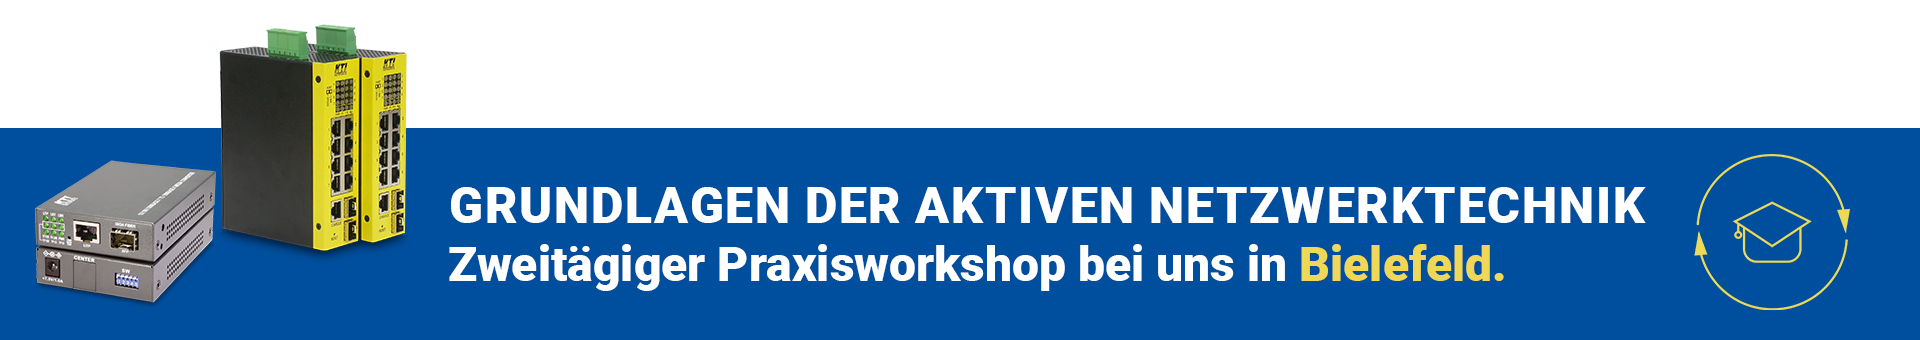 Blaues Transparent mit verschiedenen Netzwerkgeräten und dem Text Grundlagen der aktiven Netzwerktechnik - Zweitägiger Praxisworkshop bei uns in Bielefeld